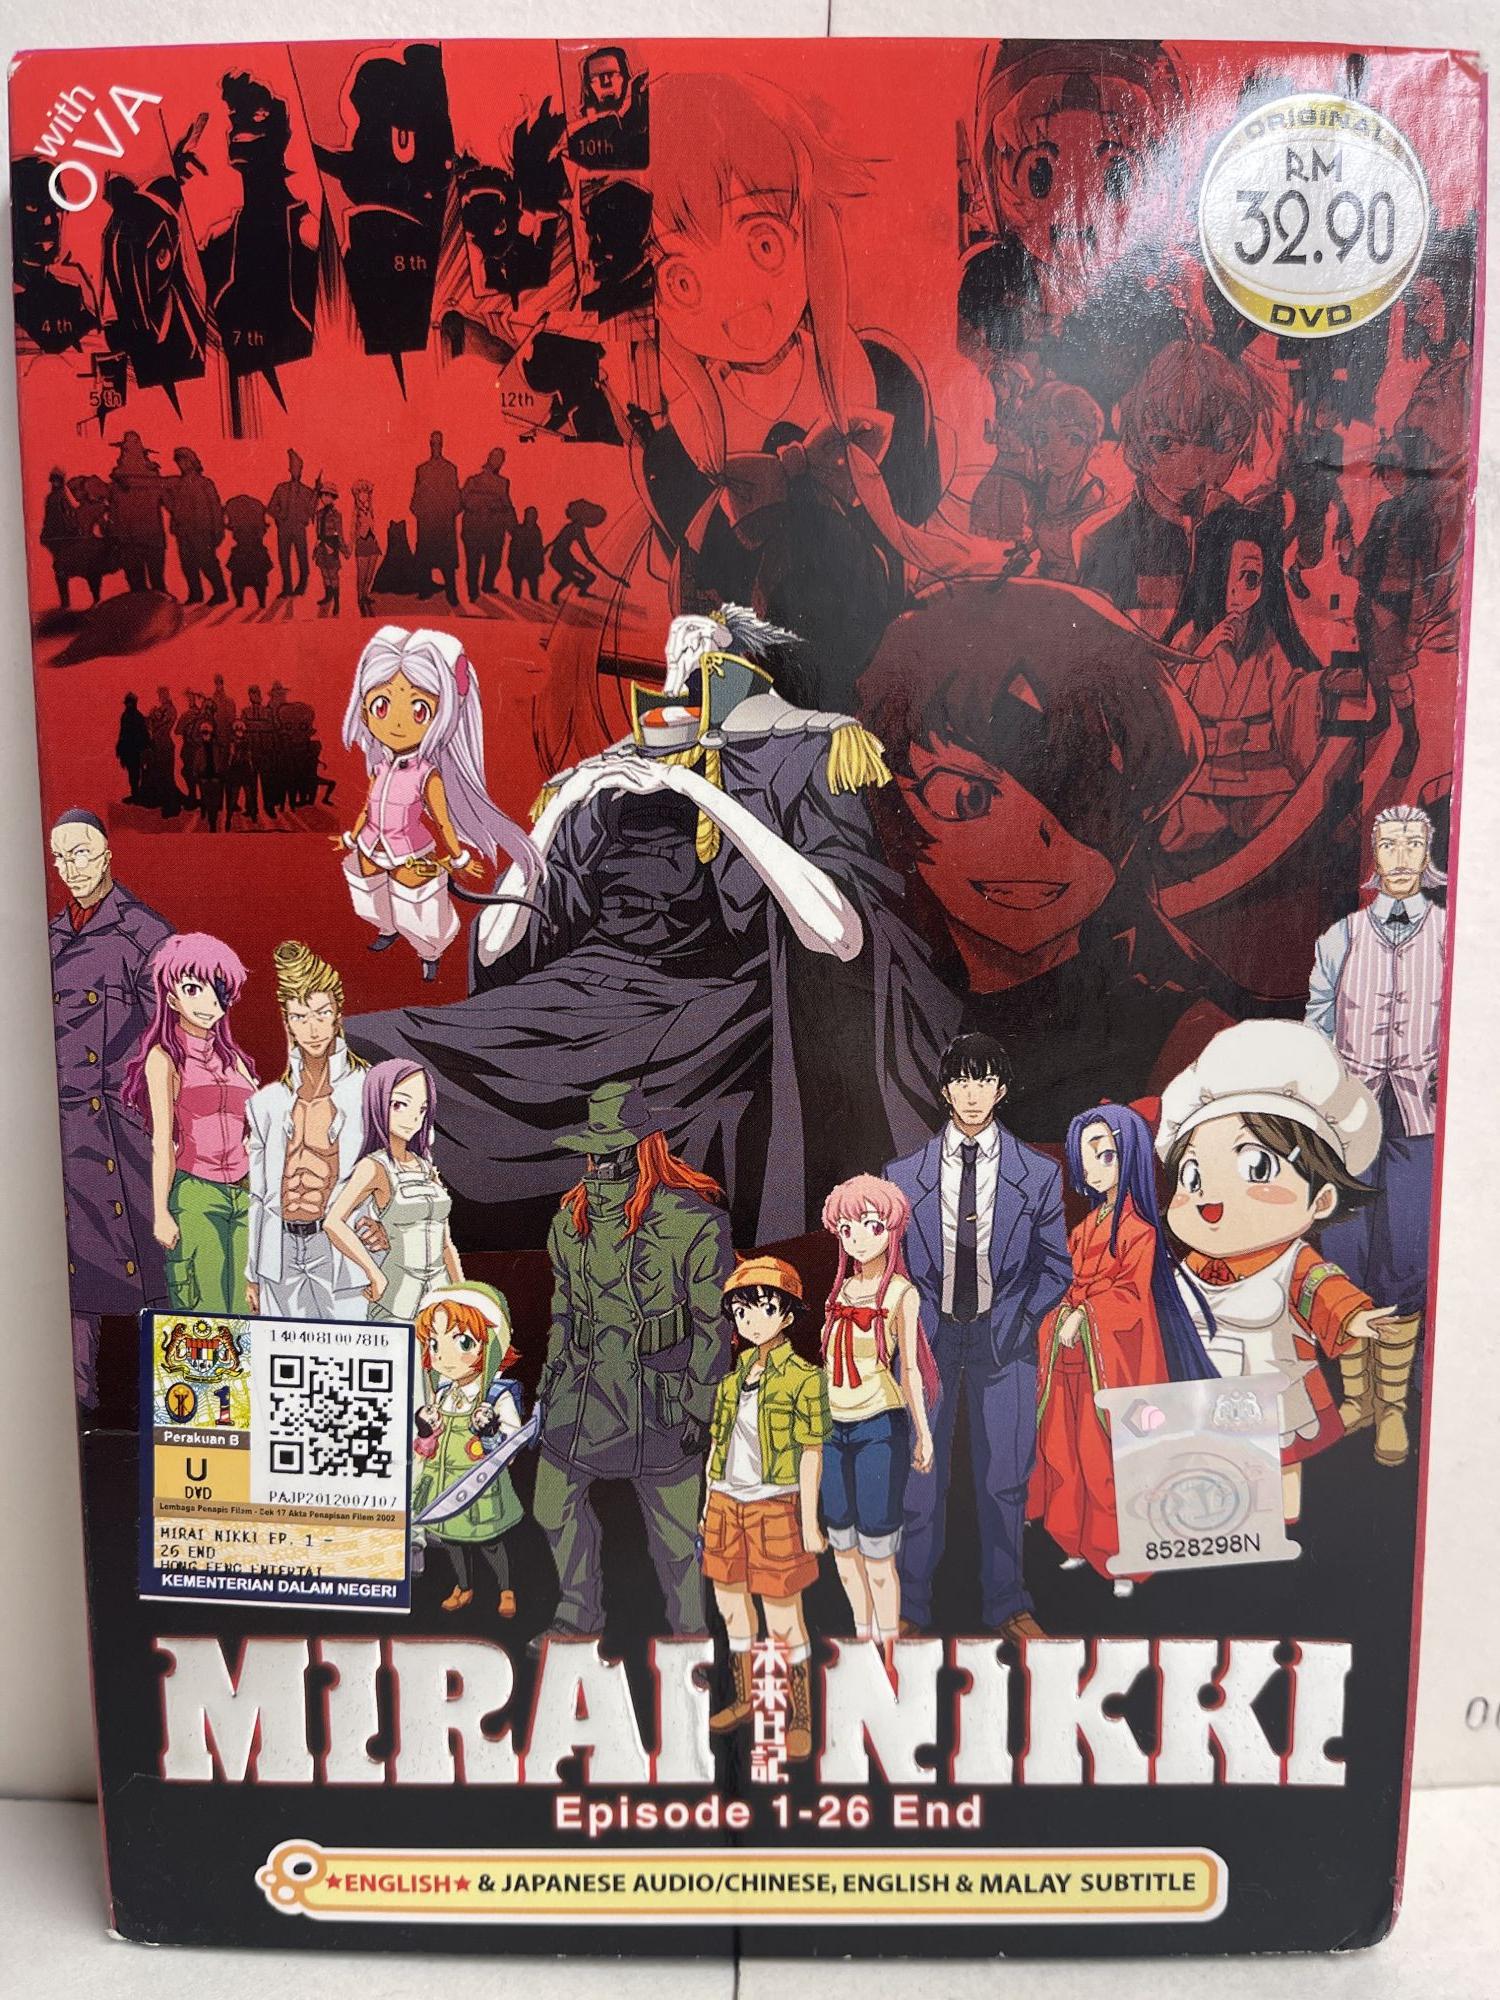 Anime Mirai Nikki Episode 1-26 End + OVA ENGLISH DUBBED DVD